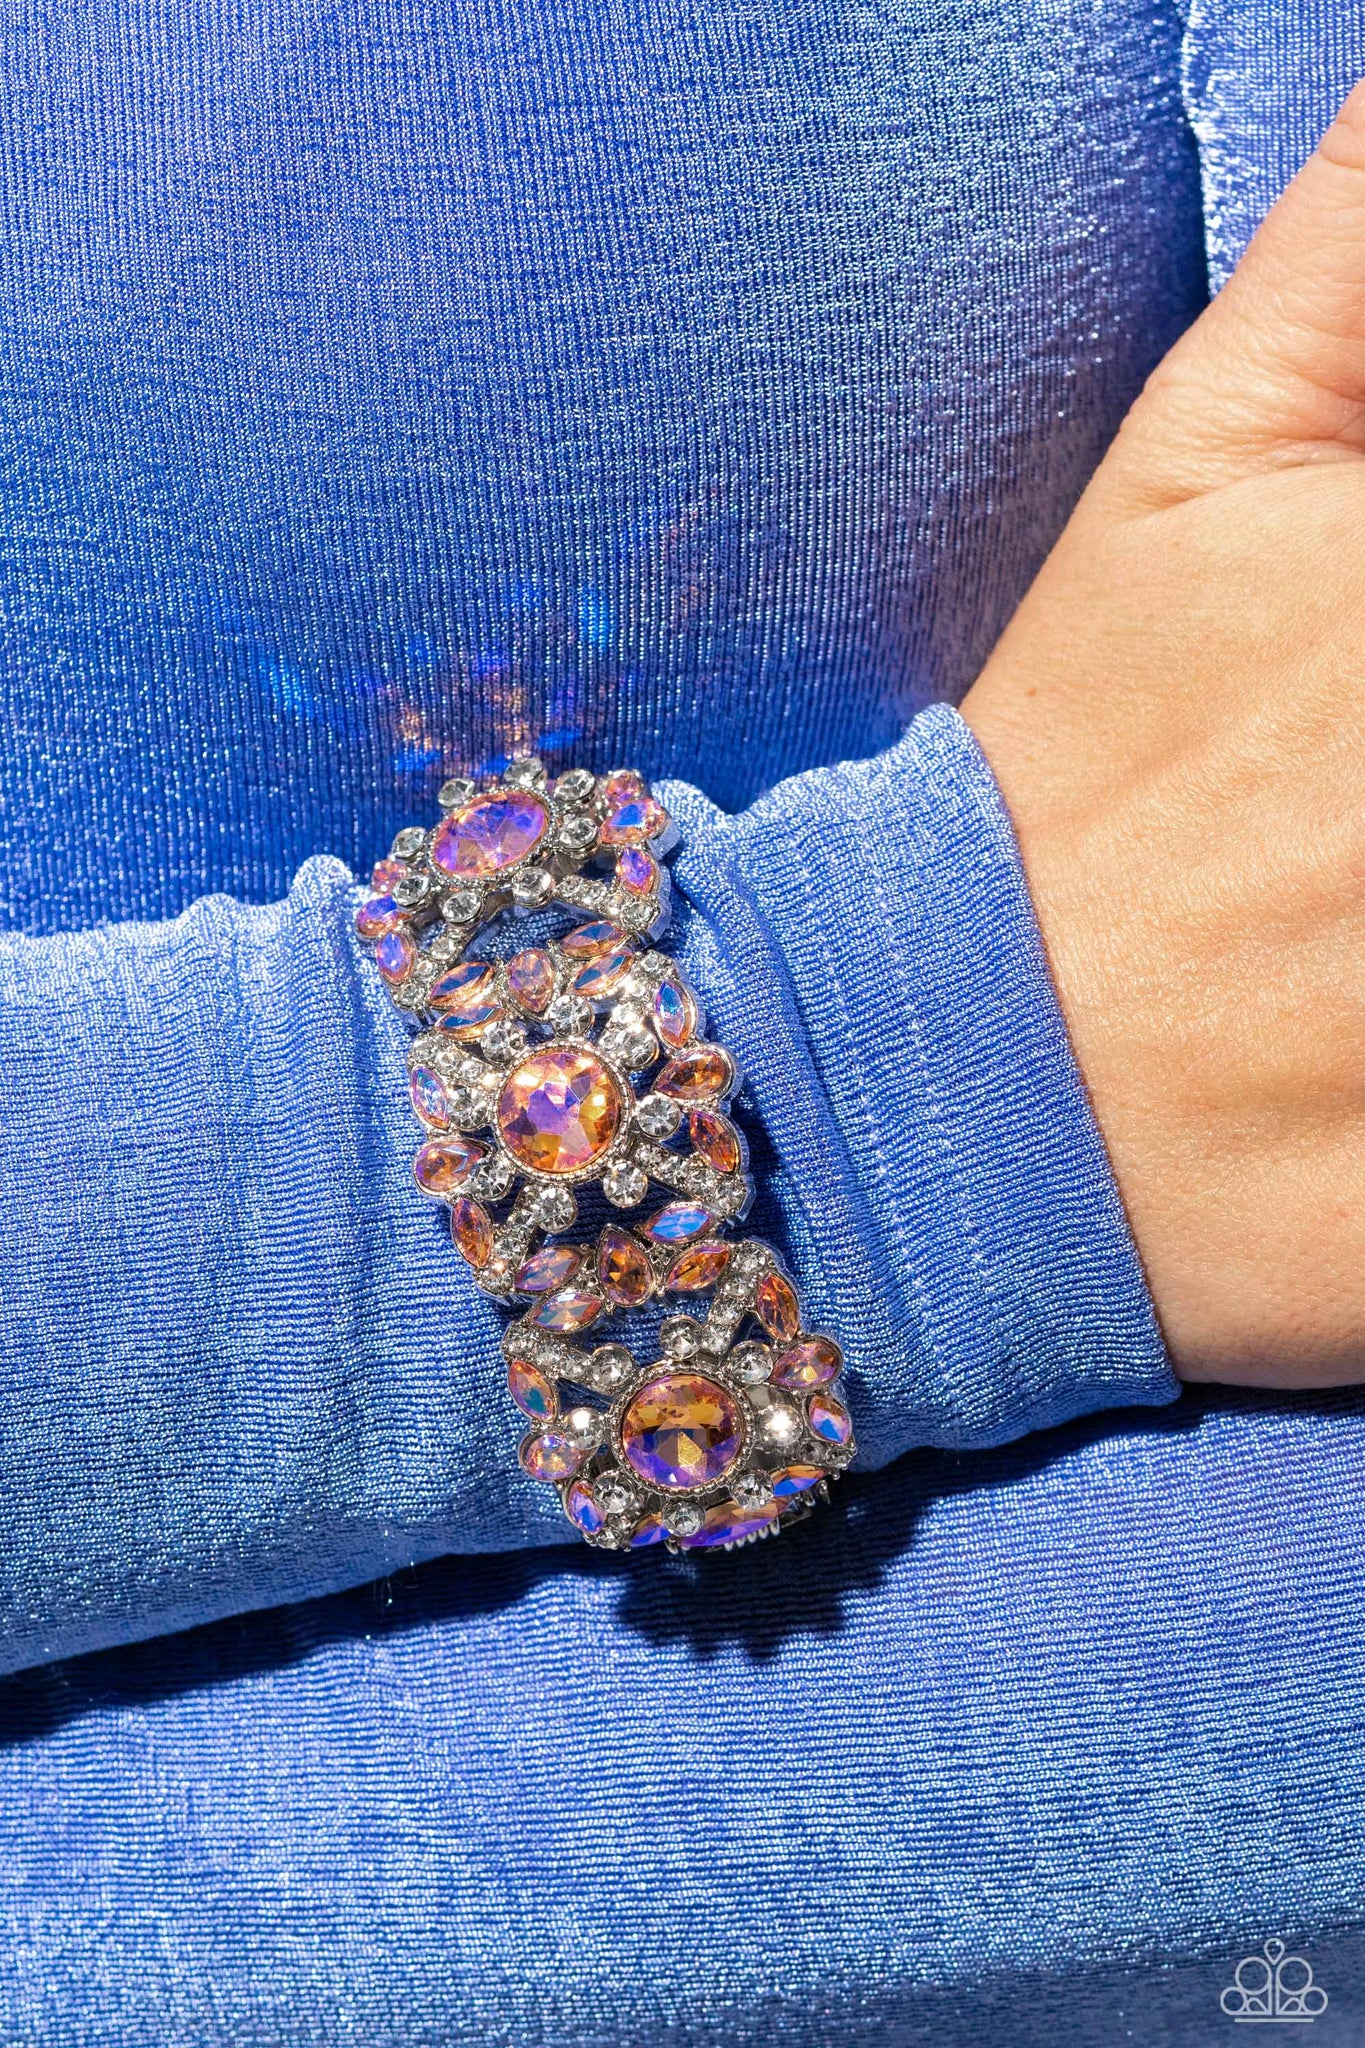 Starlet Shimmer Mandala Design Pull String Bracelet Kit – Frank Divas